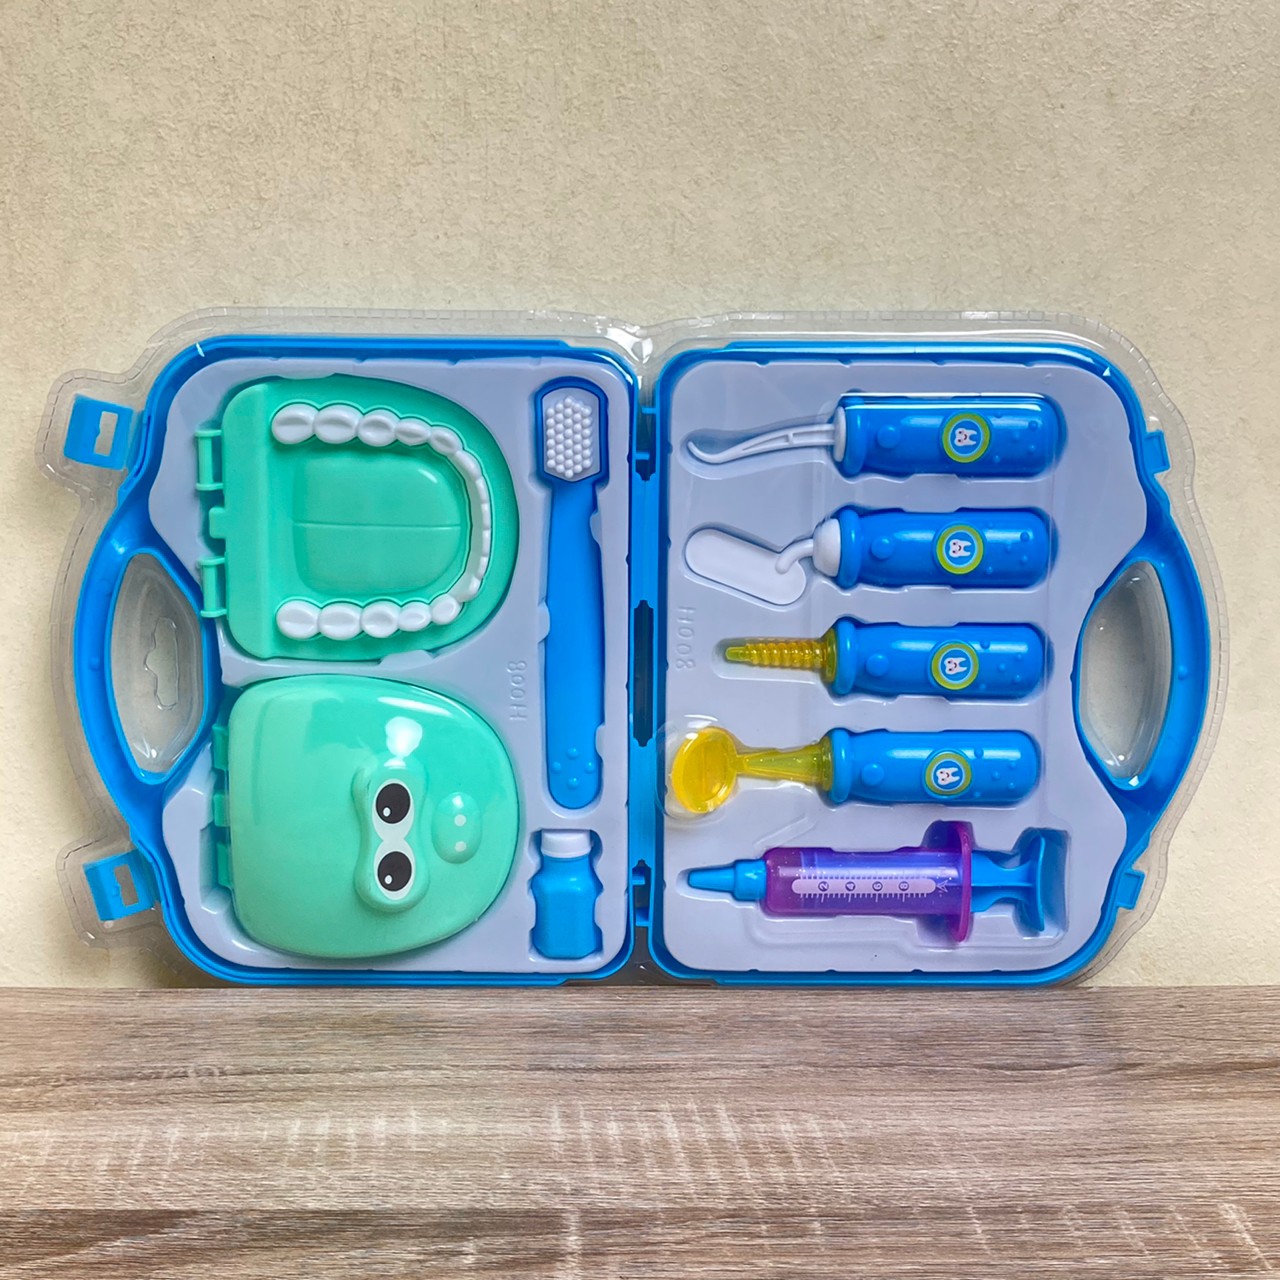 Mika Toys ของเล่นหมอ ของเล่นหมอฟัน ครบเซต ฟันปลอมของเล่น มี มอก. ชุดของเล่นหมอฟัน ชุดของเล่นคุณหมอ ชุดของเล่นคุณหมอฟัน ของเล่นเสริมทักษะ